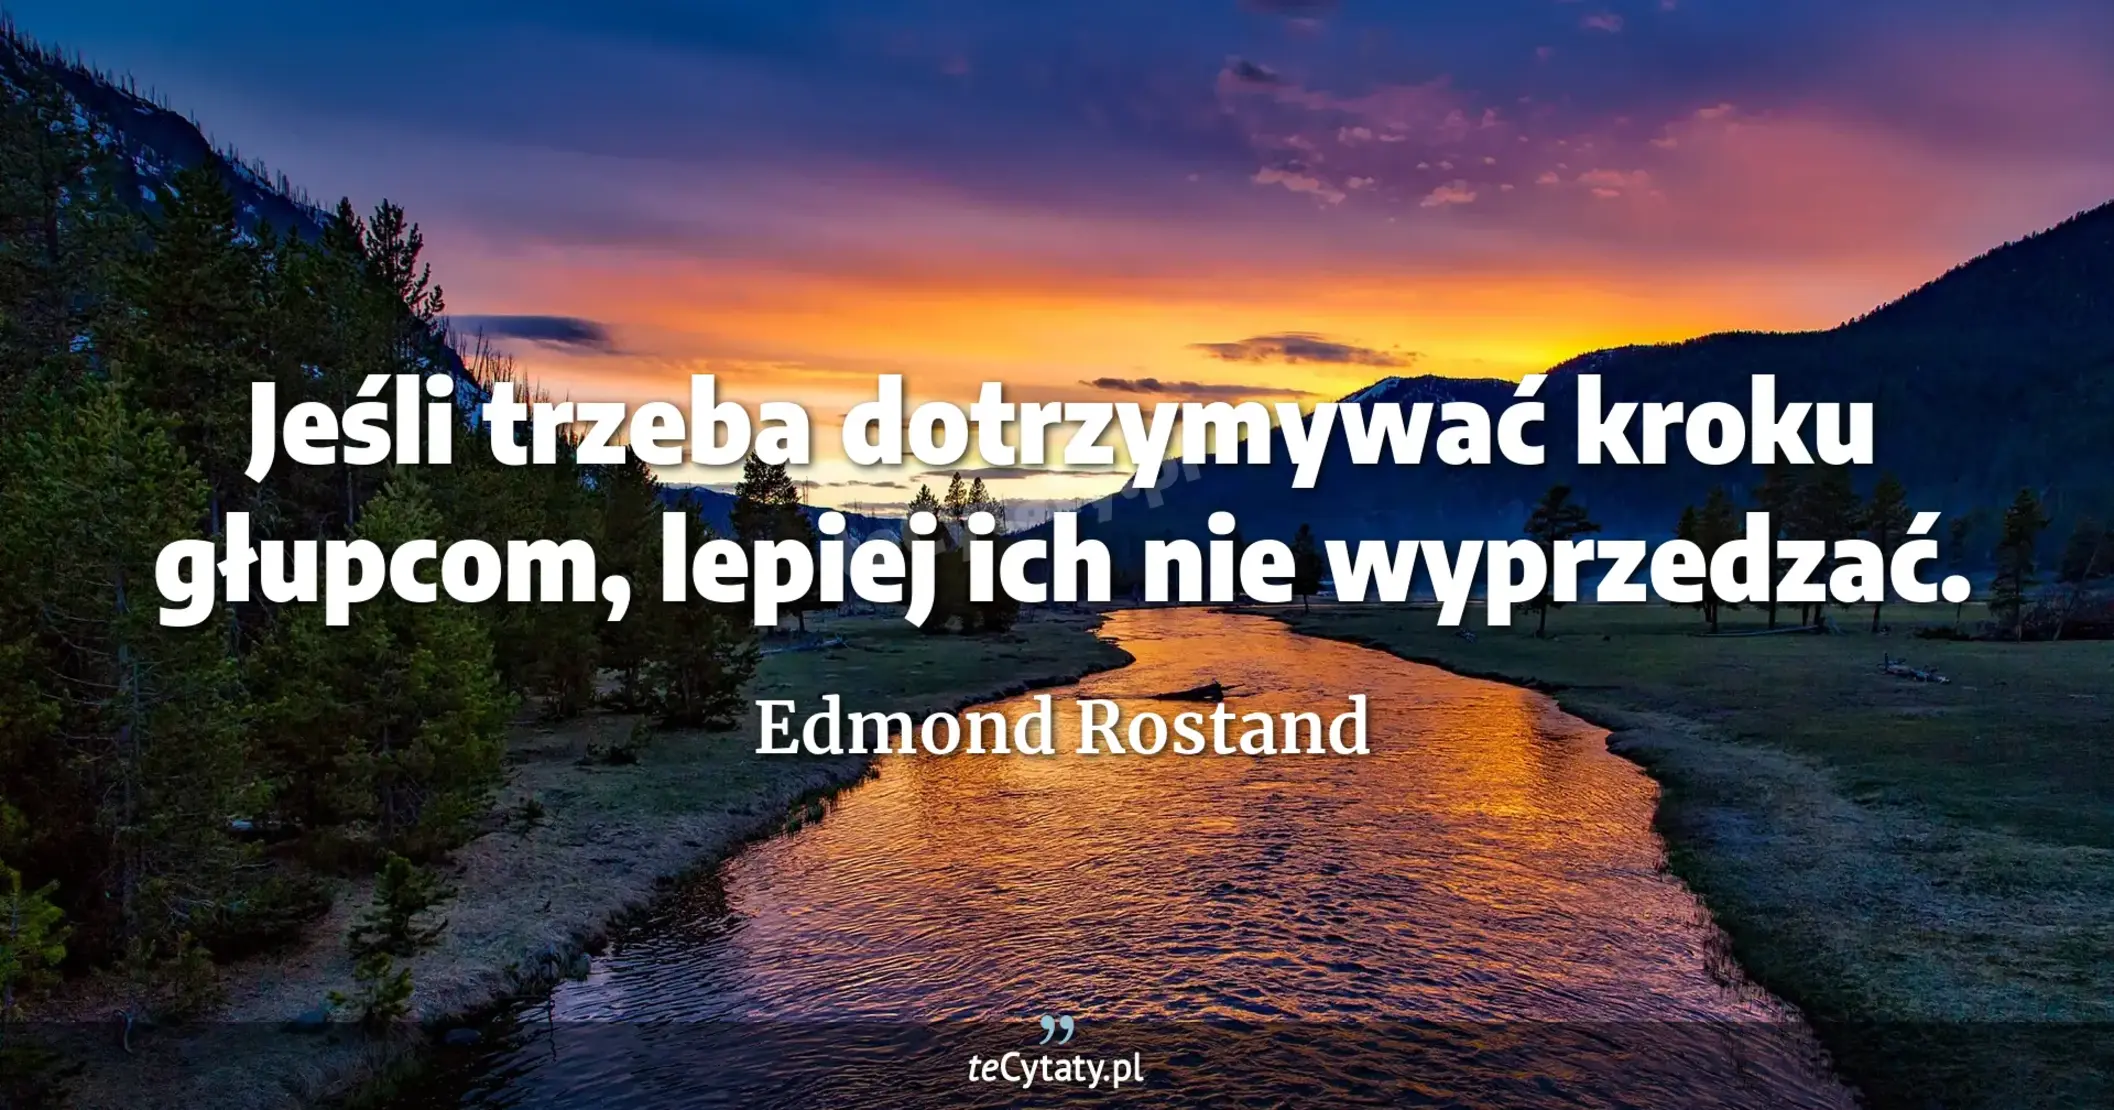 Jeśli trzeba dotrzymywać kroku głupcom, lepiej ich nie wyprzedzać. - Edmond Rostand